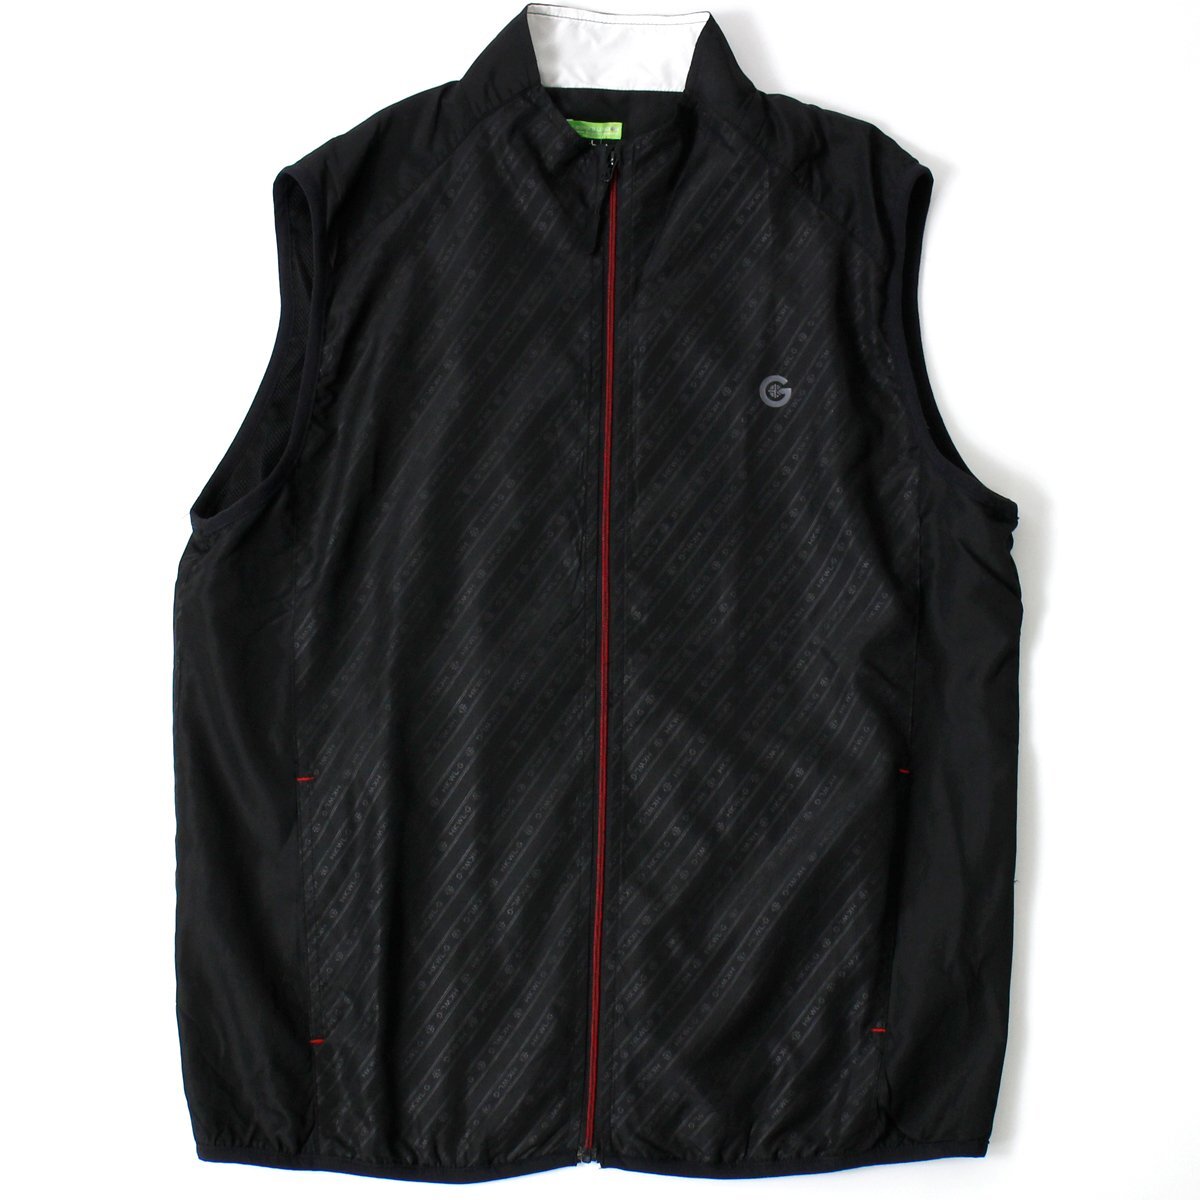  новый товар Hiroko Koshino Golf 3WAY лучший mok шея рубашка с длинным рукавом 2 позиций комплект LL чёрный HK WORKS LONDON Green жакет GOLF весна *CI1763B